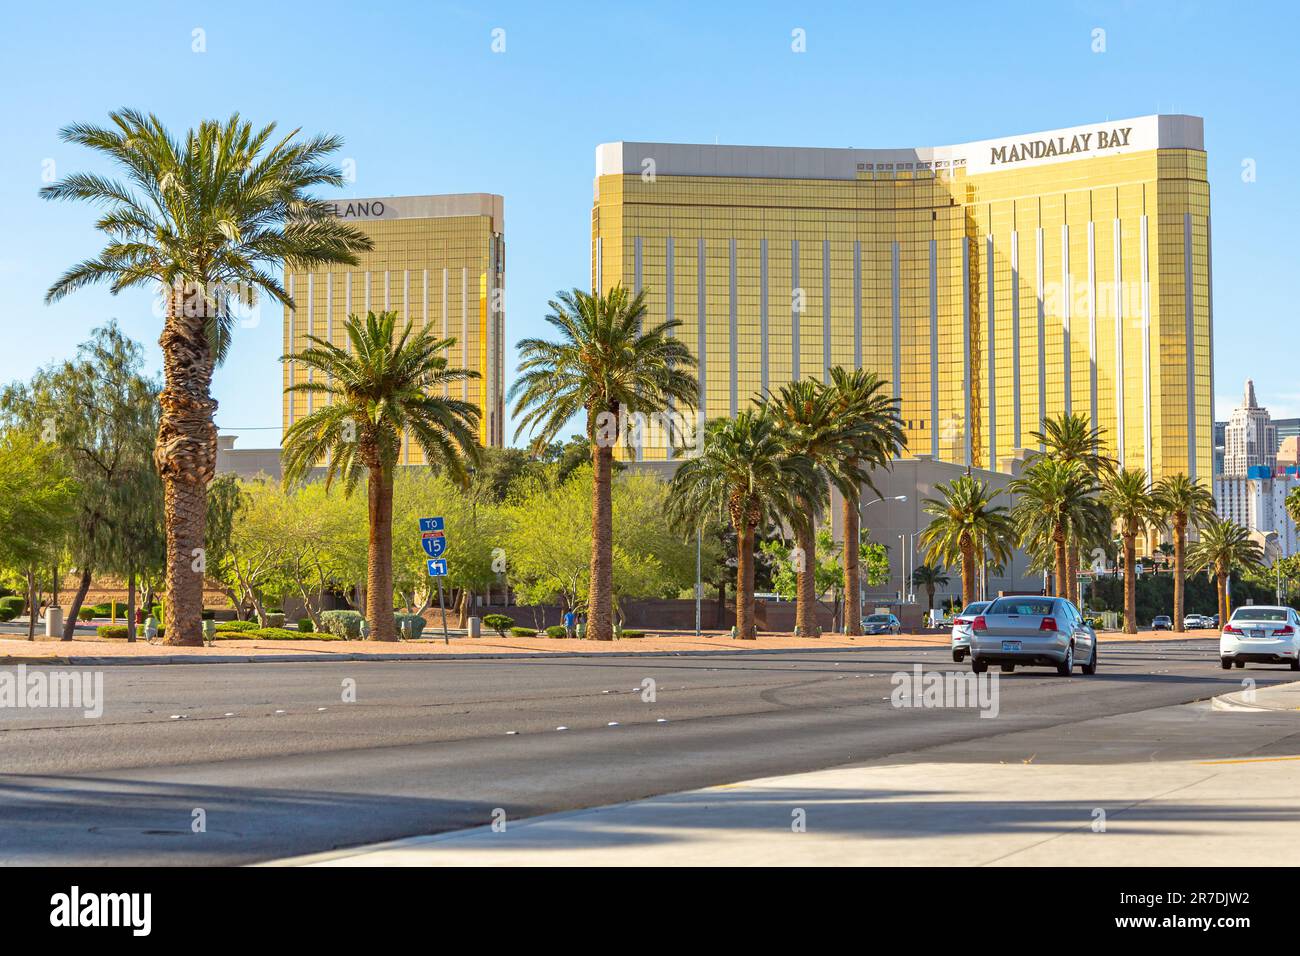 Las Vegas, Nevada - Aprile 2017: Mandalay Bay. Entrando a Las Vegas, Mandalay Bay è il primo hotel sul viale principale della città. La facciata dorata della Baia di Mandalay risplende nei raggi del sole. Foto Stock